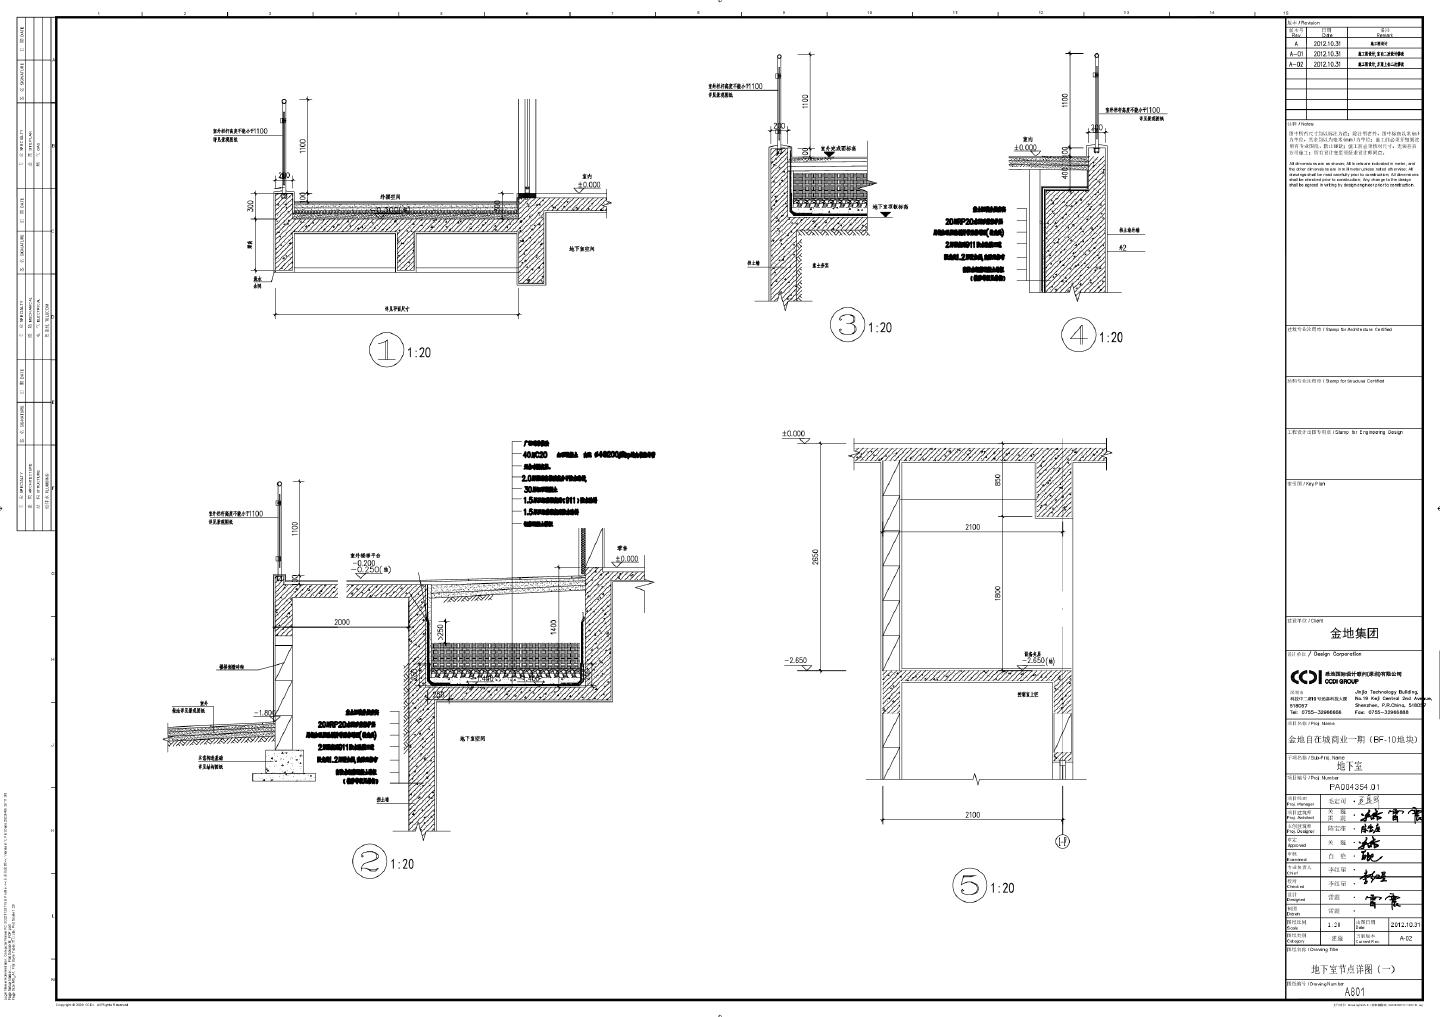 金地自在城商业一期（BF-10地块） 地下室节点详图CAD图